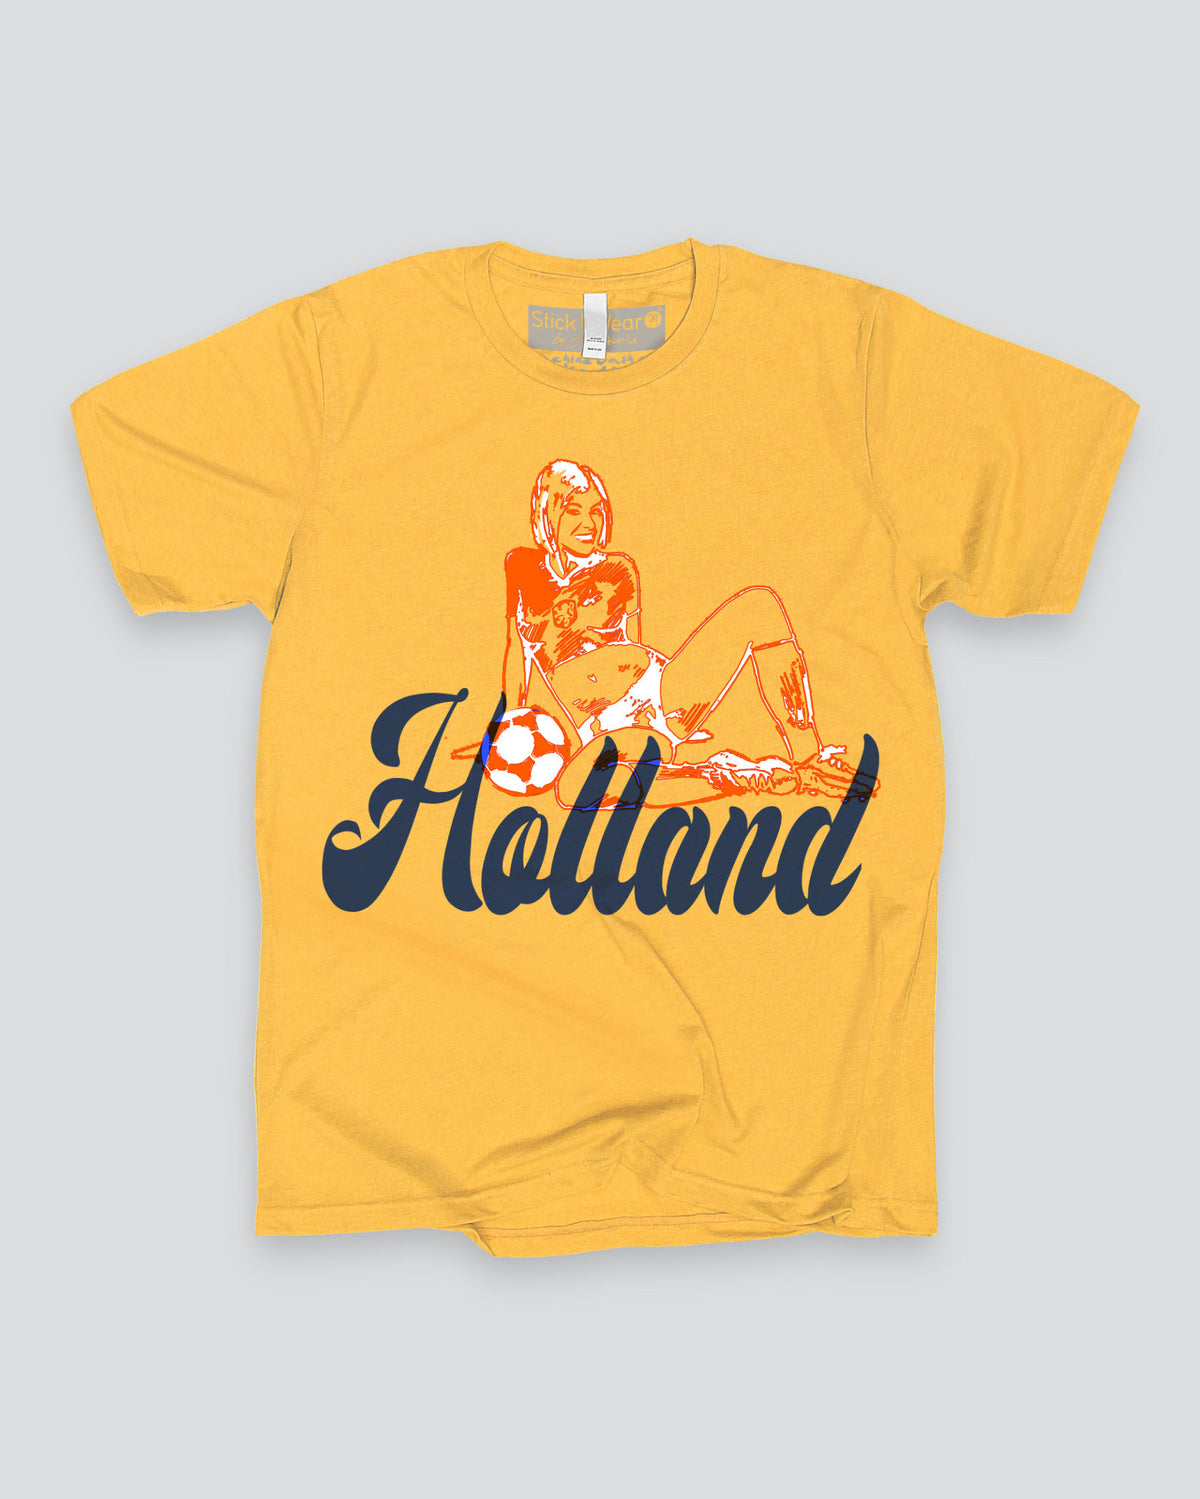 HOLLAND Calendar Girls Soccer T-Shirt